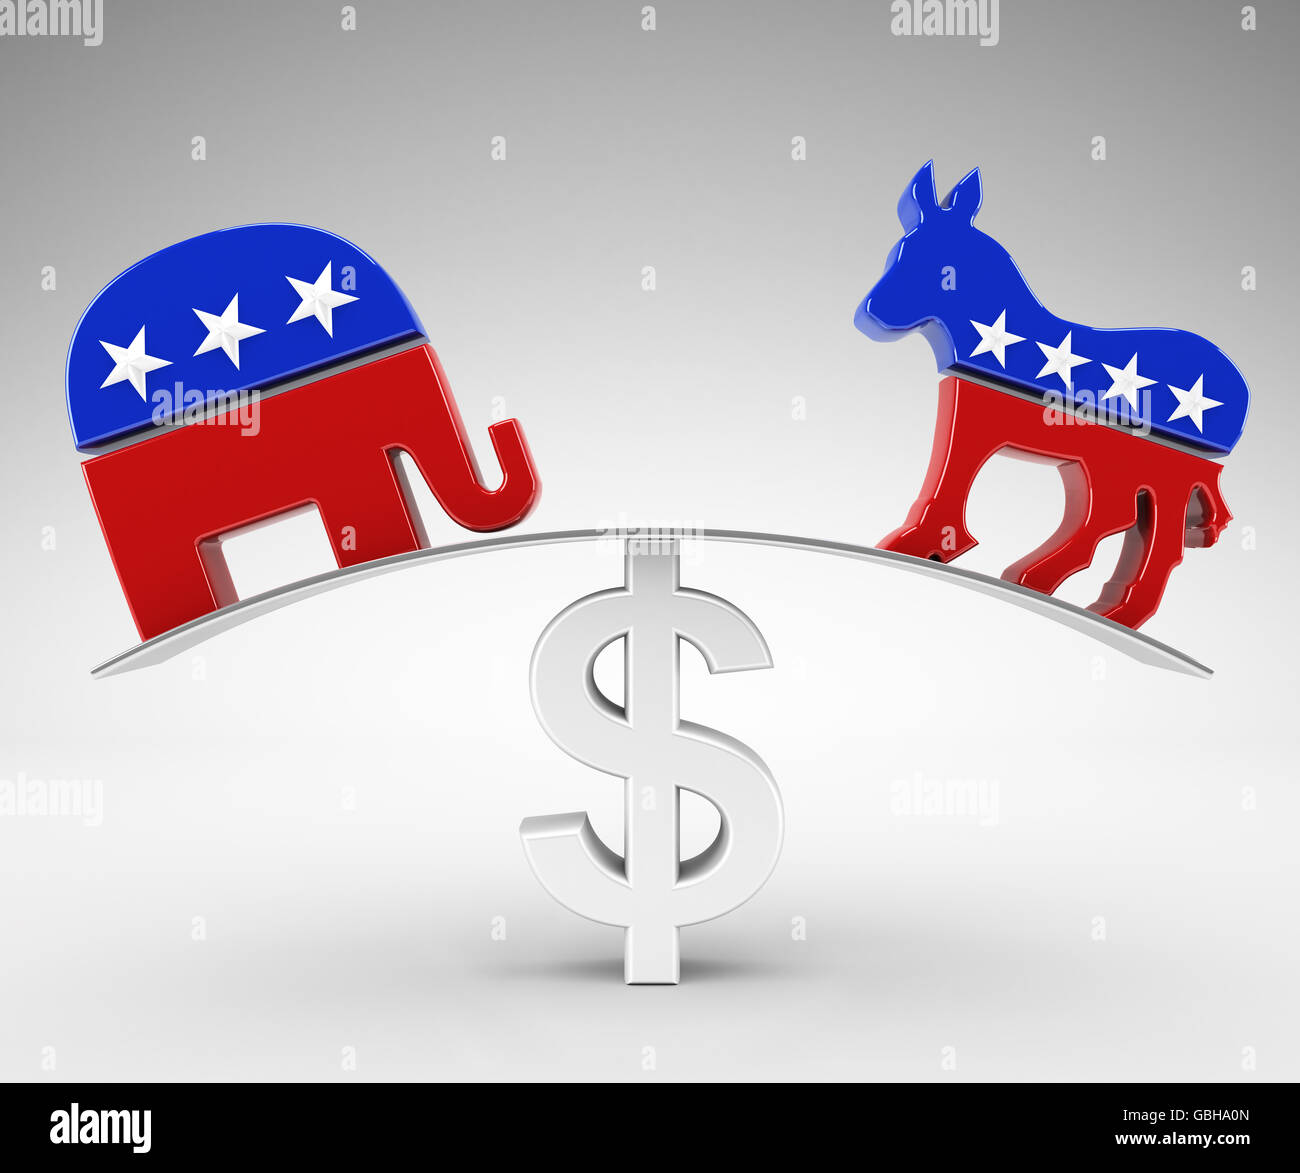 Politics and money Stock Photo